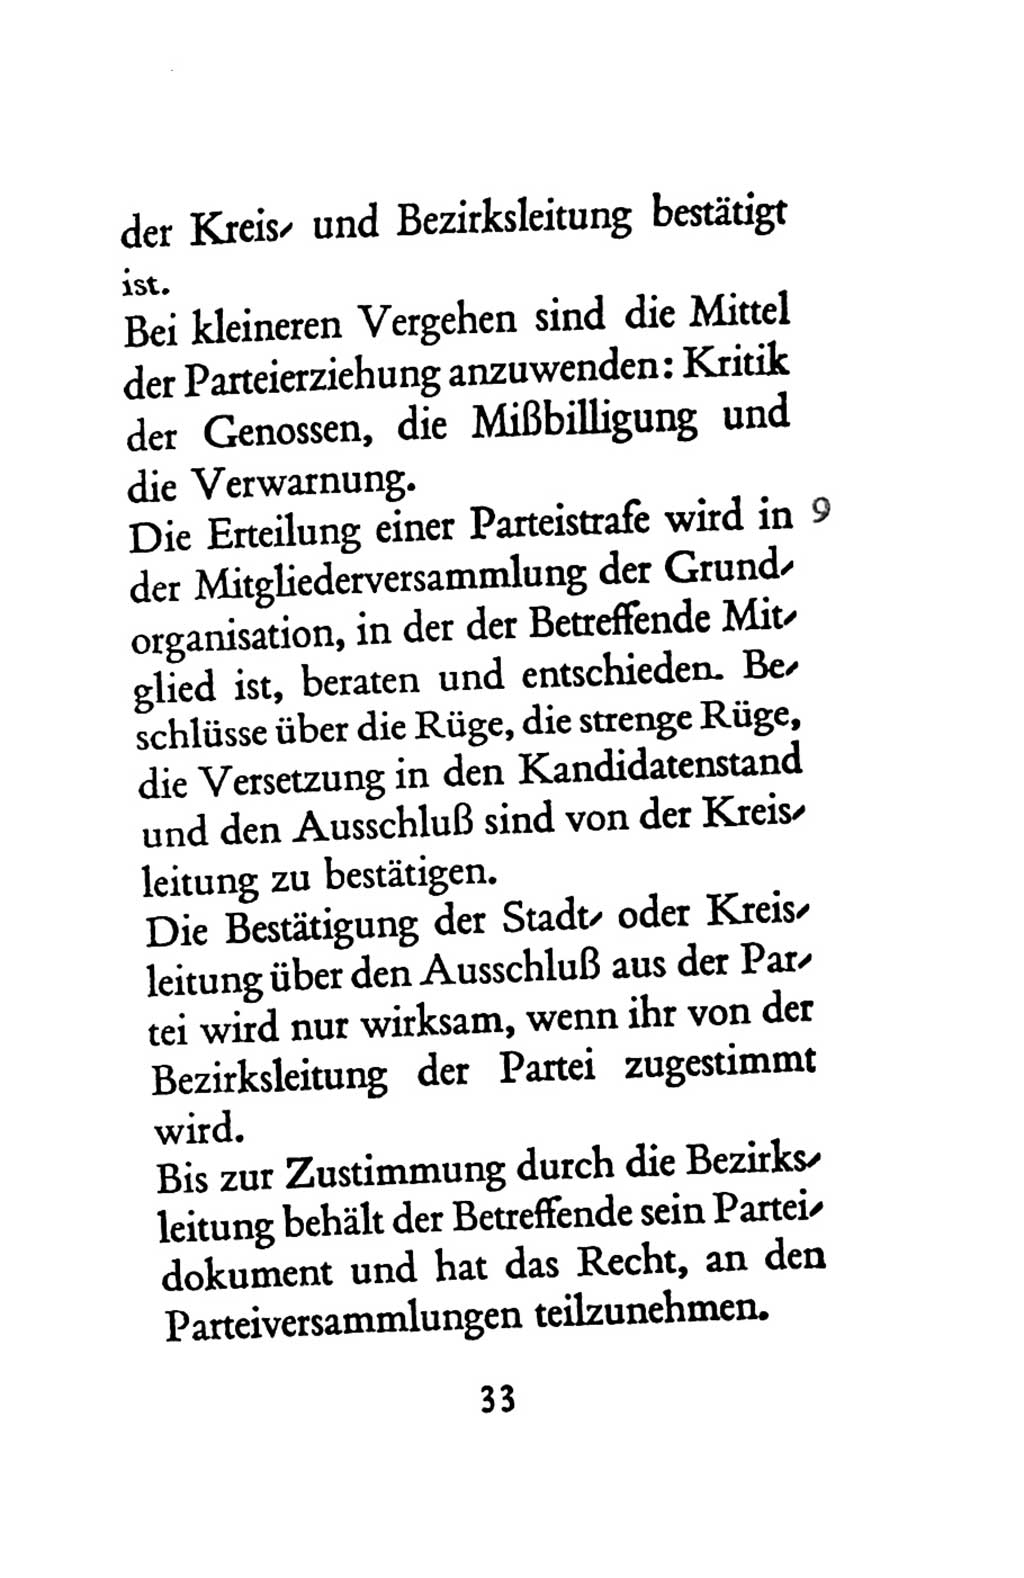 Statut der Sozialistischen Einheitspartei Deutschlands (SED) 1963, Seite 33 (St. SED DDR 1963, S. 33)